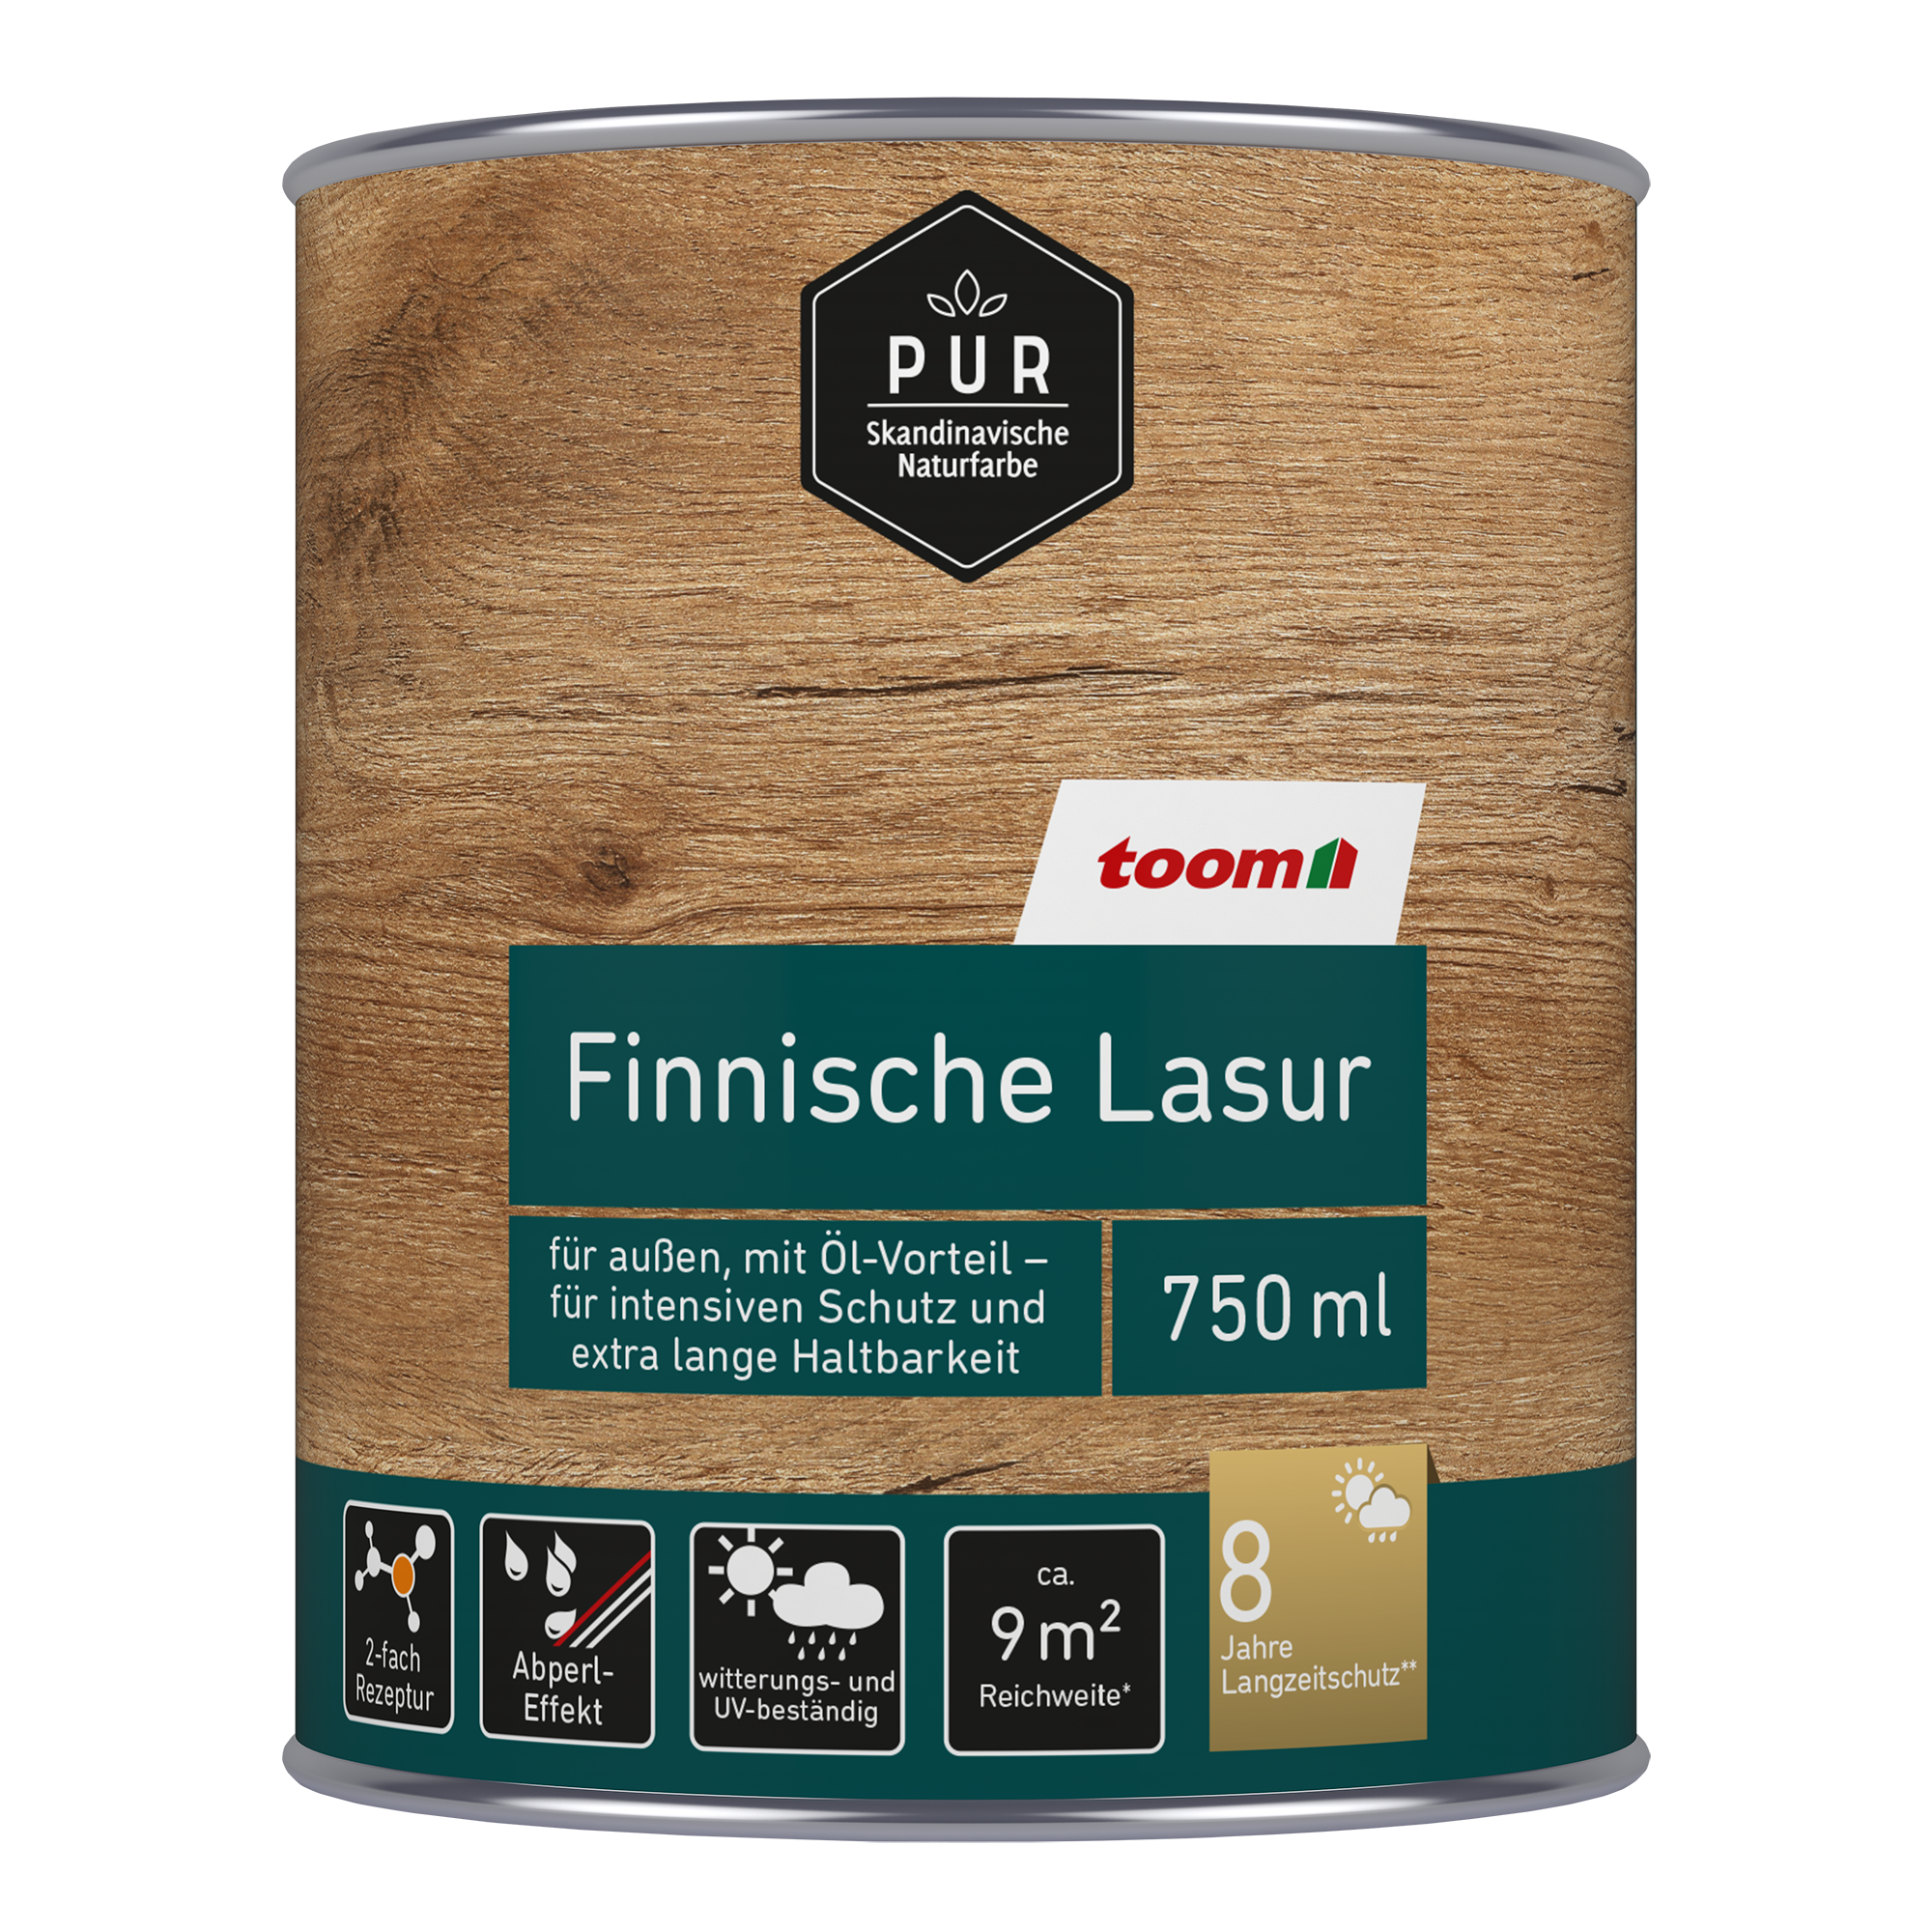 Finnische Lasur teakfarben 750 ml + product picture